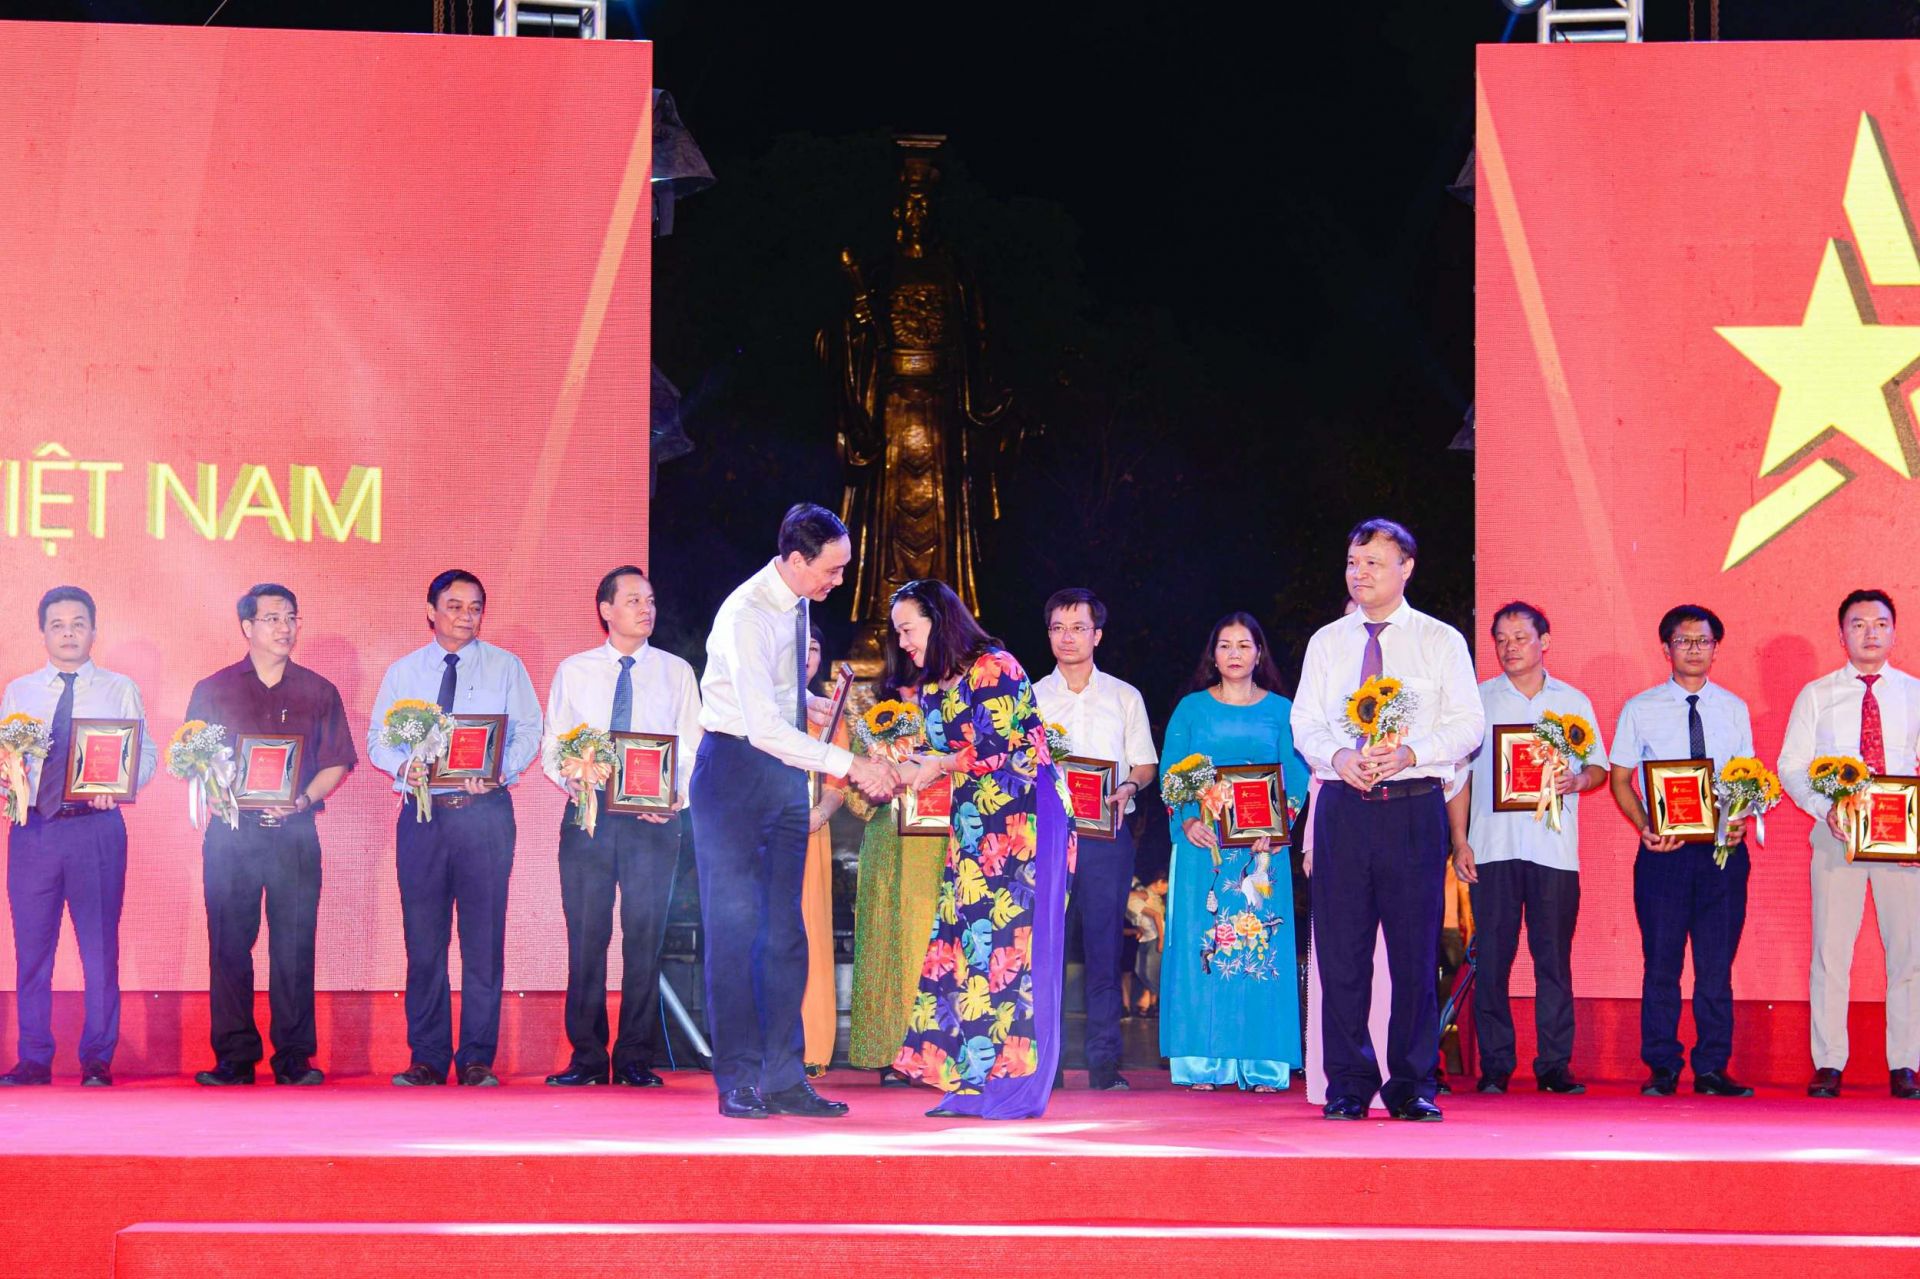 Phó Chủ tịch Ủy ban Trung ương Mặt trận Tổ quốc Việt Nam Phùng Khánh Tài (trái) và Thứ trưởng Bộ Công Thương Đỗ Thắng Hải (phải) trao kỷ niệm chương cho đại diện Liên hiệp Hợp tác xã Thành phố Hồ Chí Minh (Saigon Co.op)